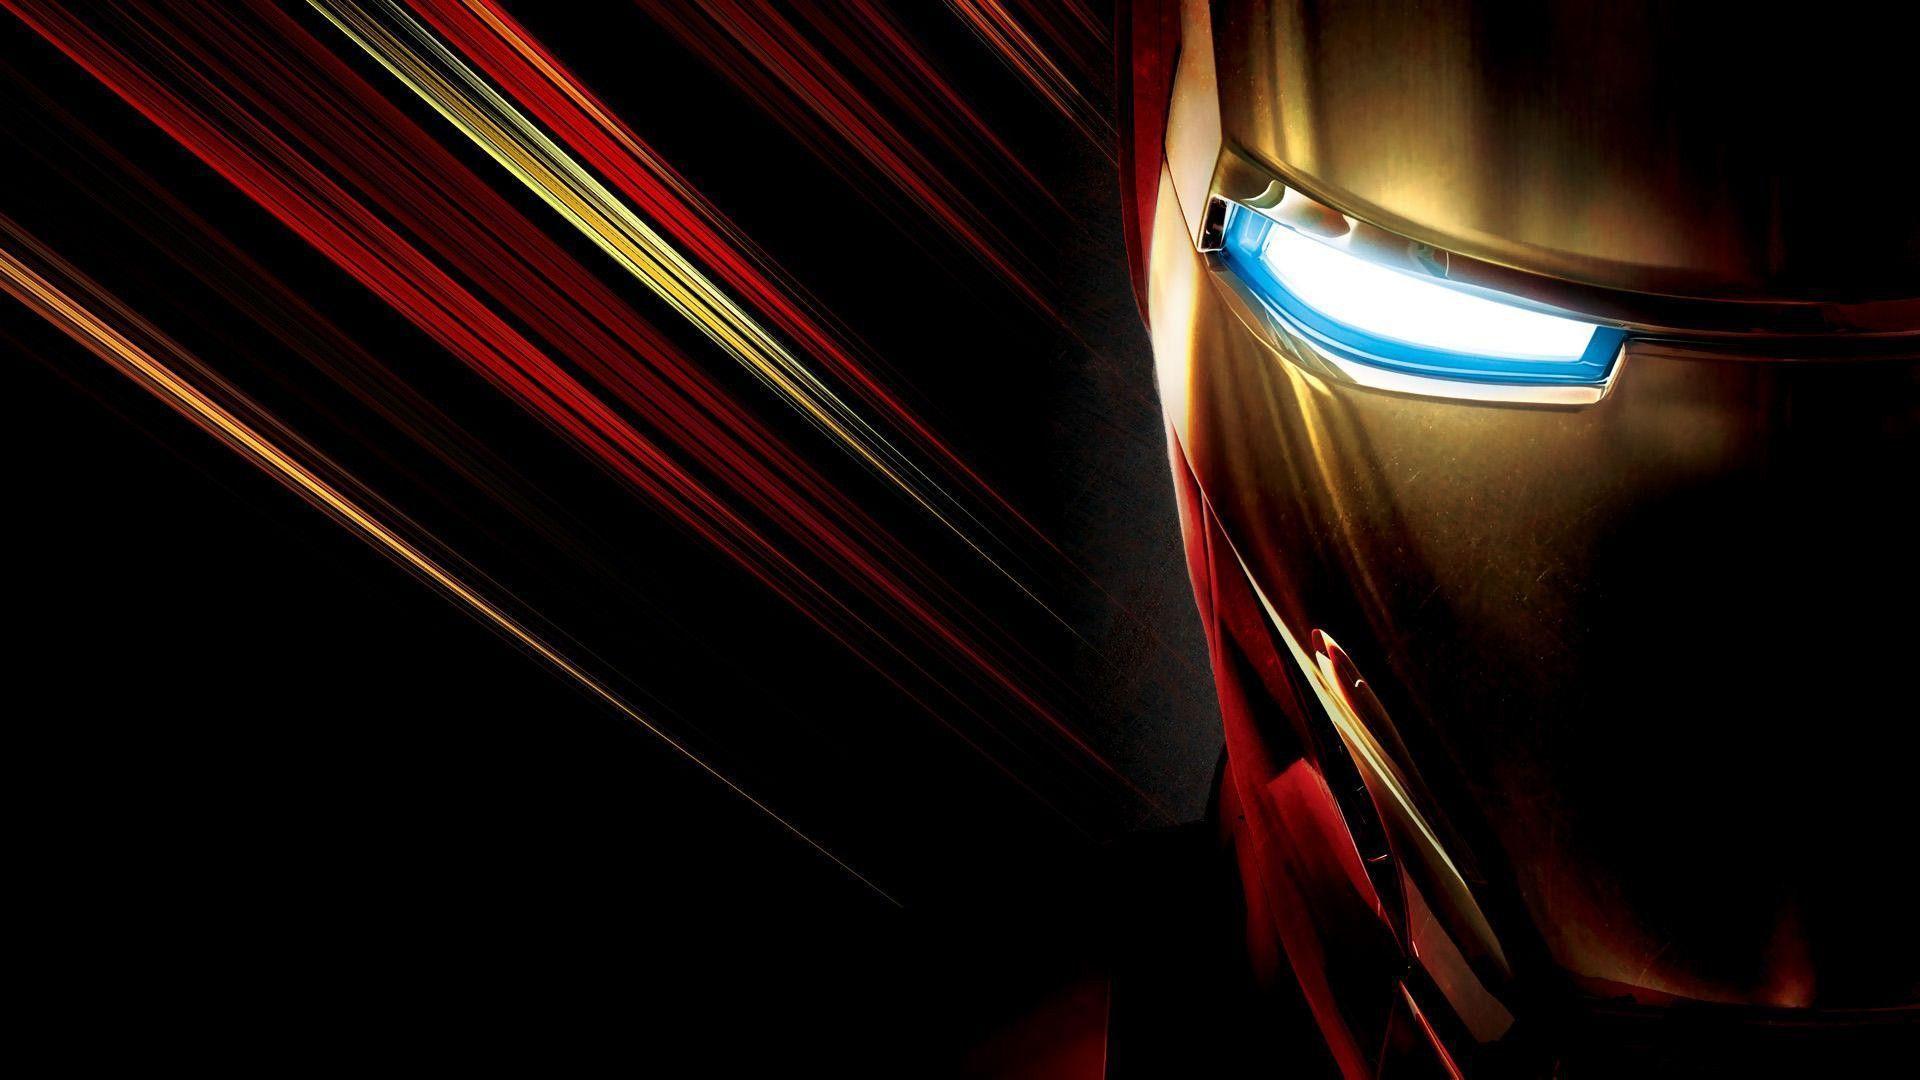 Iron Man Image, Awesome Iron Man Wallpaper